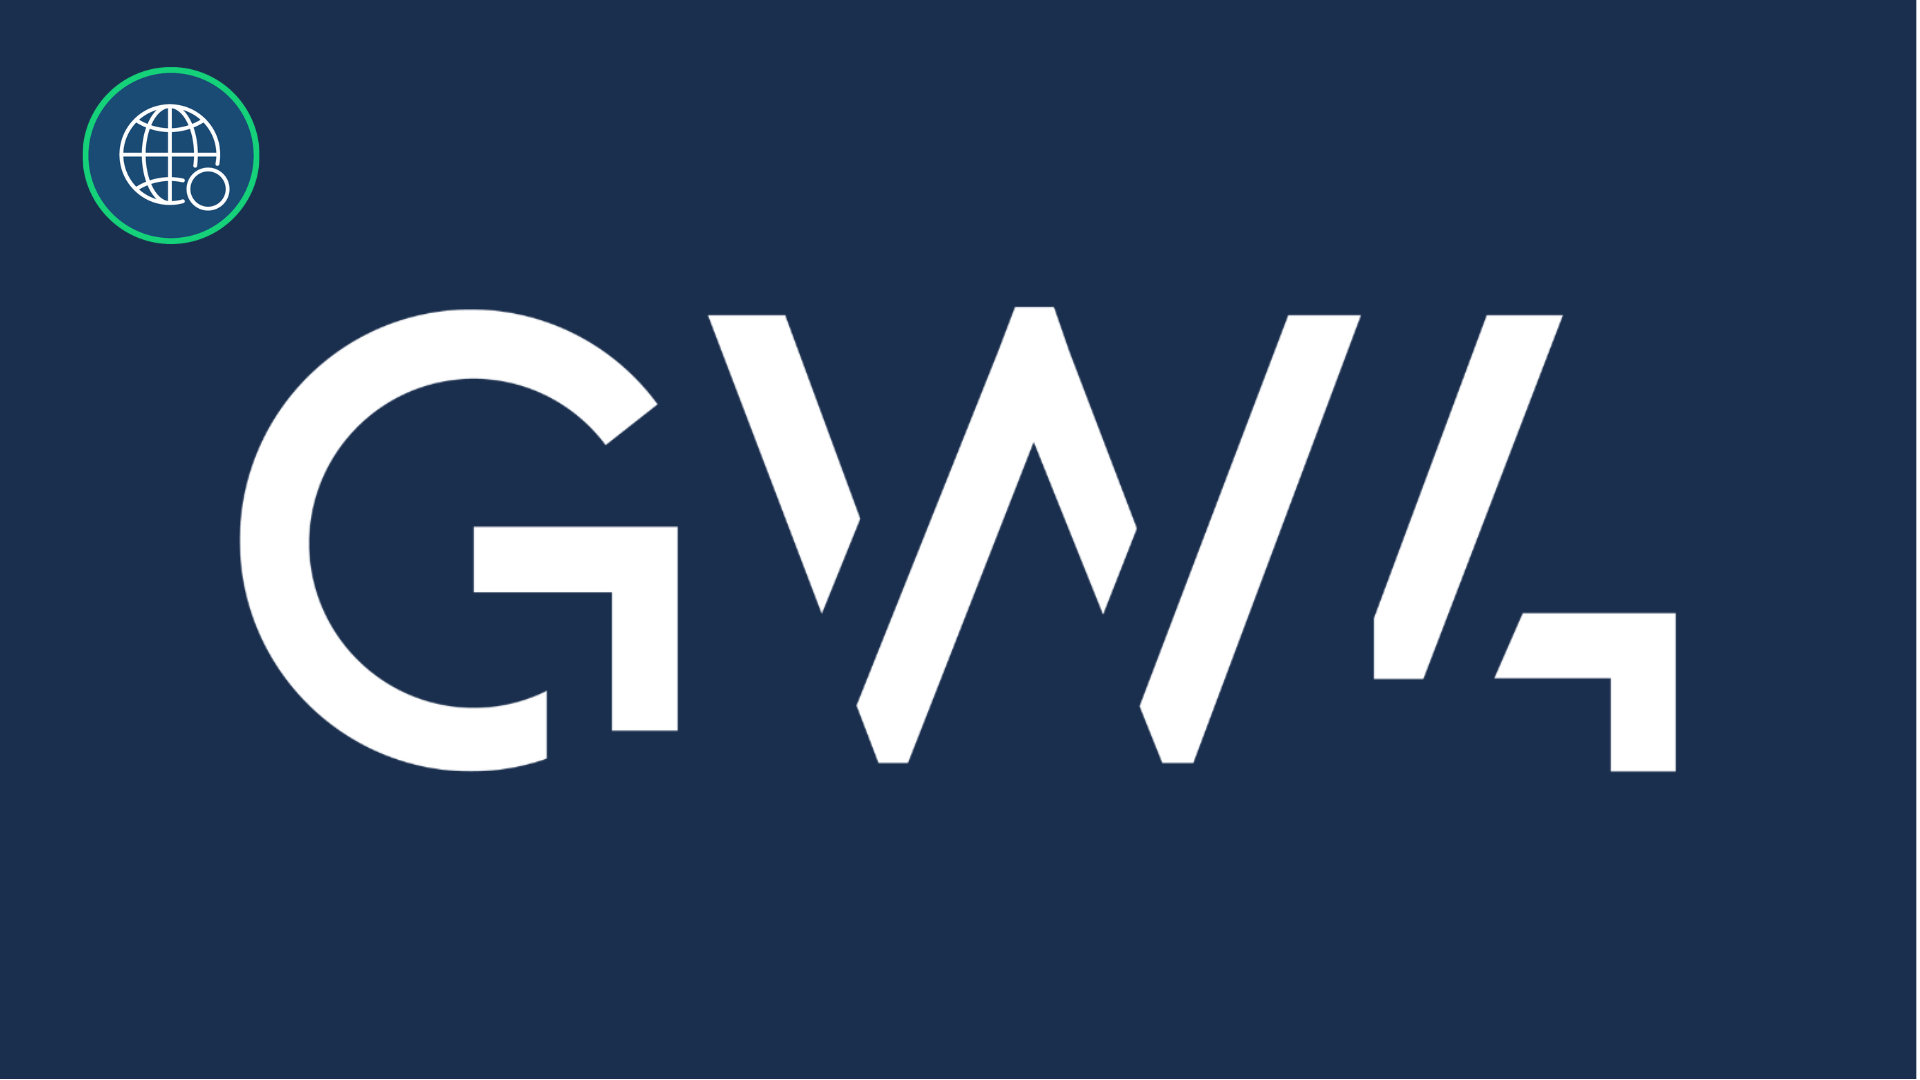 GW4 logo